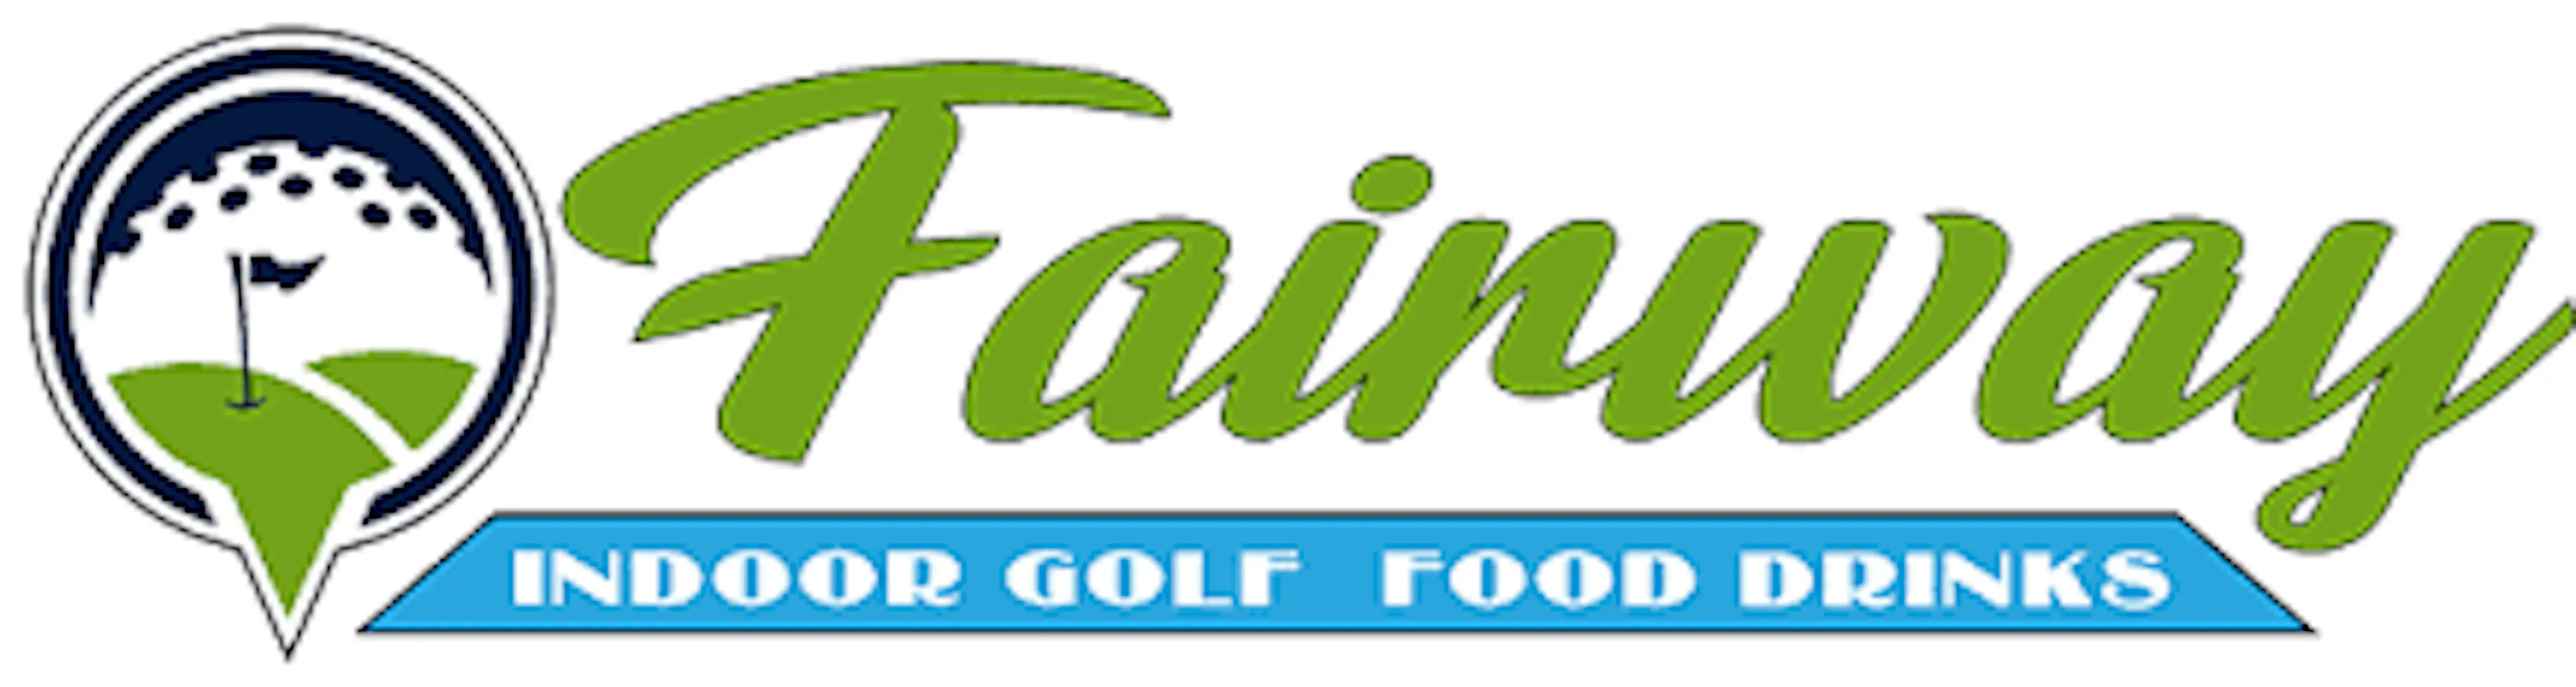 fairway indoor golf